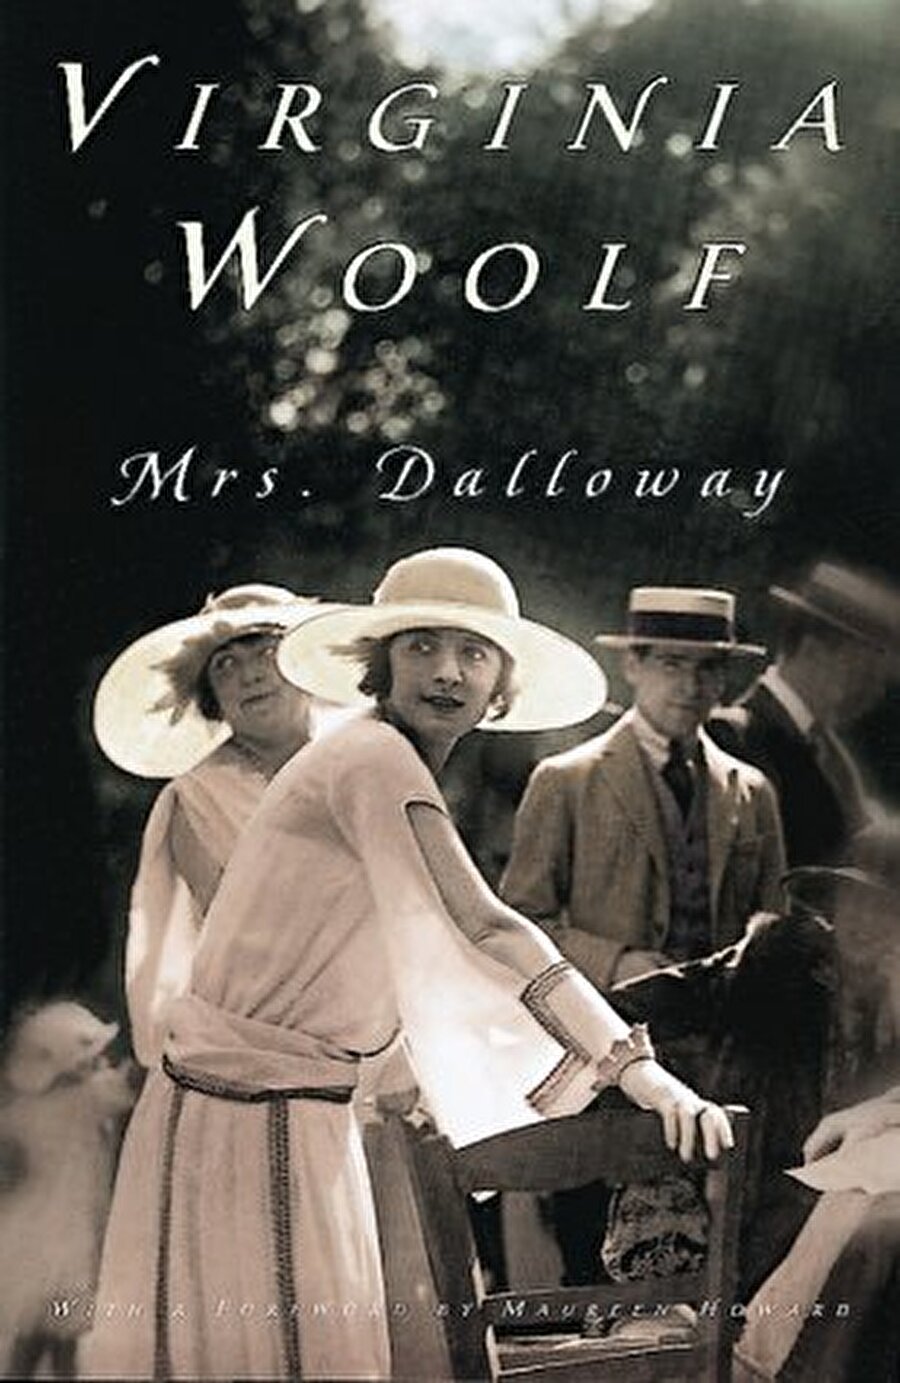 Bayan Dalloway / Virginia Woolf

                                    Mrs. Dalloway, edebiyat tarihinde daha sonraları “bilinç akışı” adıyla anılacak bir tekniğin en başarılı örneğidir. Kitaba adını veren Clarissa Dalloway, akşam vereceği davetin hazırlıkları peşinde Londra sokaklarında dolaşırken, kitabın öteki, “gizli” kahramanı Septimus Warren Smith aynı sokaklarda başka, daha karanlık bir hedefe doğru yol alır. Kitabın birbiriyle hiç yüzyüze gelmeyen bu iki kahramanı delilikle sığlık, sığlıkla derinlik, yaşamla ölüm kadar temel karşıtlıklar içinde “günden geceye” yolculuklarını tamamlar ve Virginia Woolf'da birleşirler.
                                